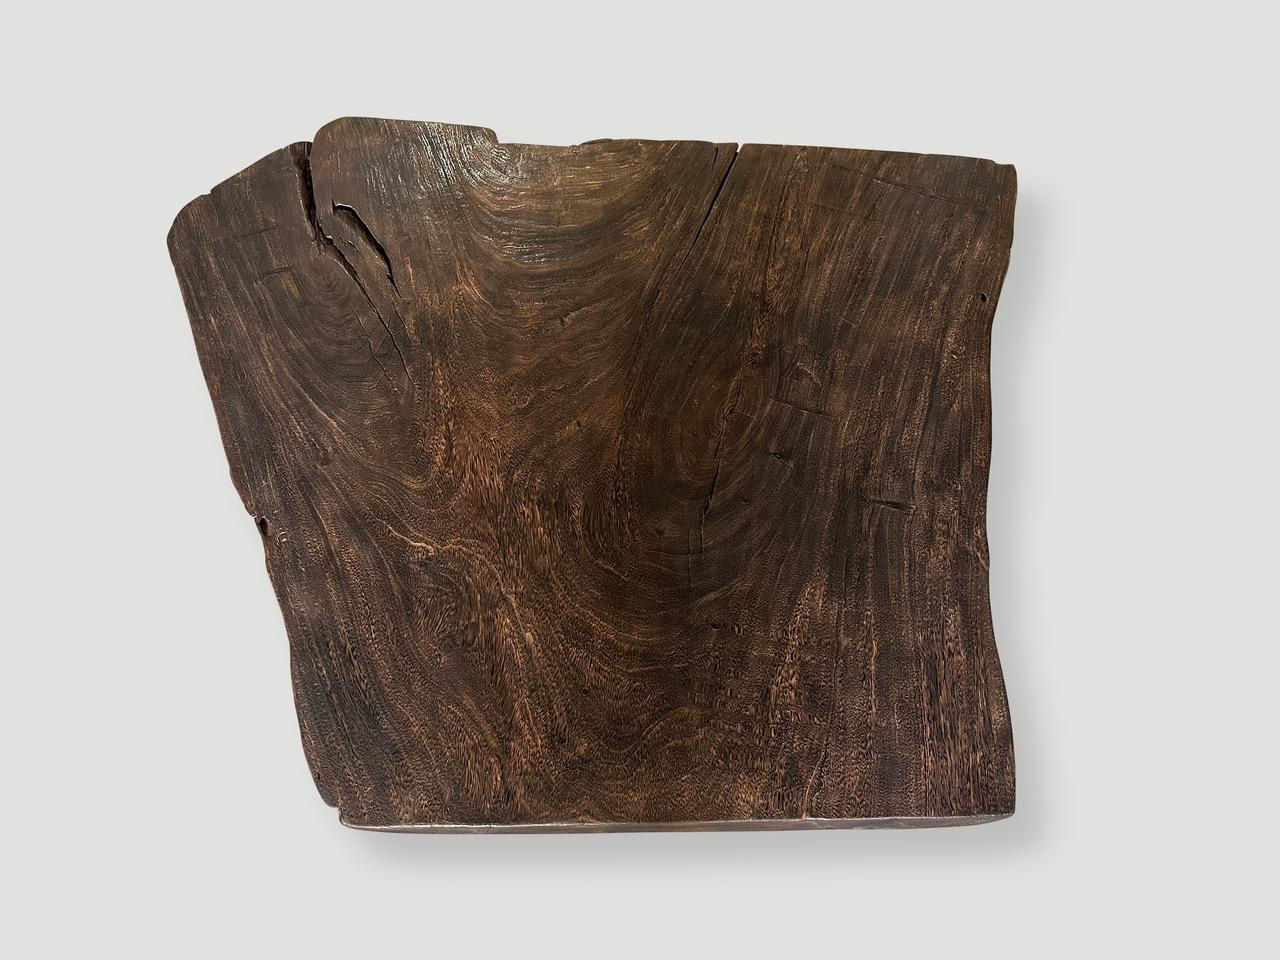 Magnifique table basse à bord vif fabriquée à partir d'une seule plaque de bois de suar de trois pouces d'épaisseur. Le bois a été carbonisé une fois, ce qui a permis de révéler les magnifiques veines du bois. Nous avons ajouté des pieds coniques de